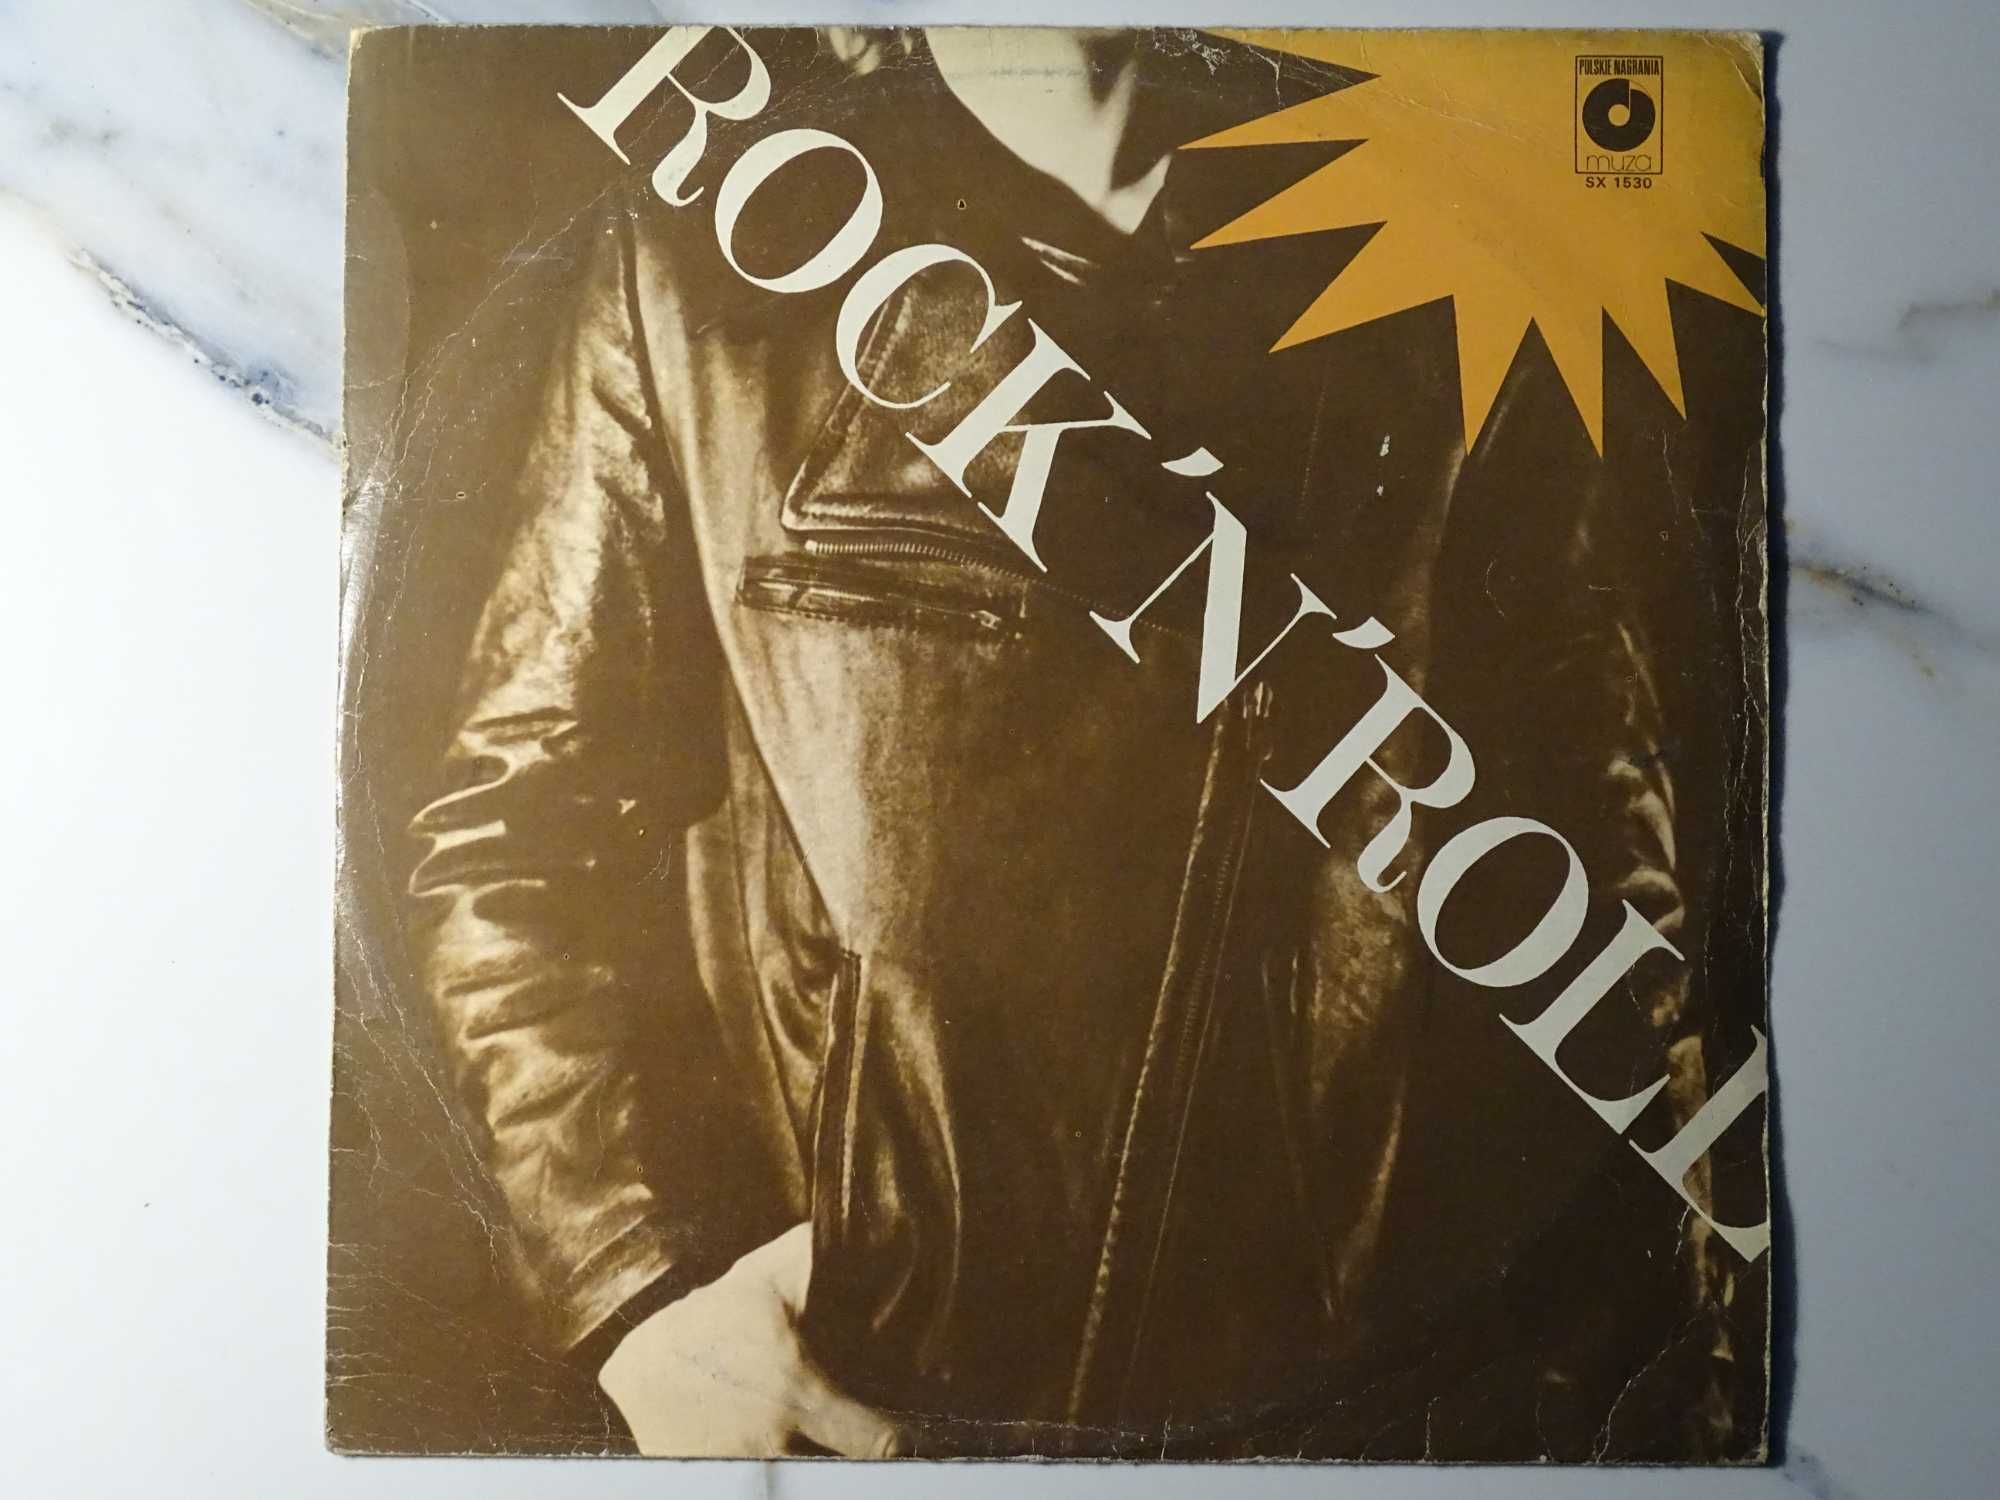 Winyl LP: "Rock'n'roll".